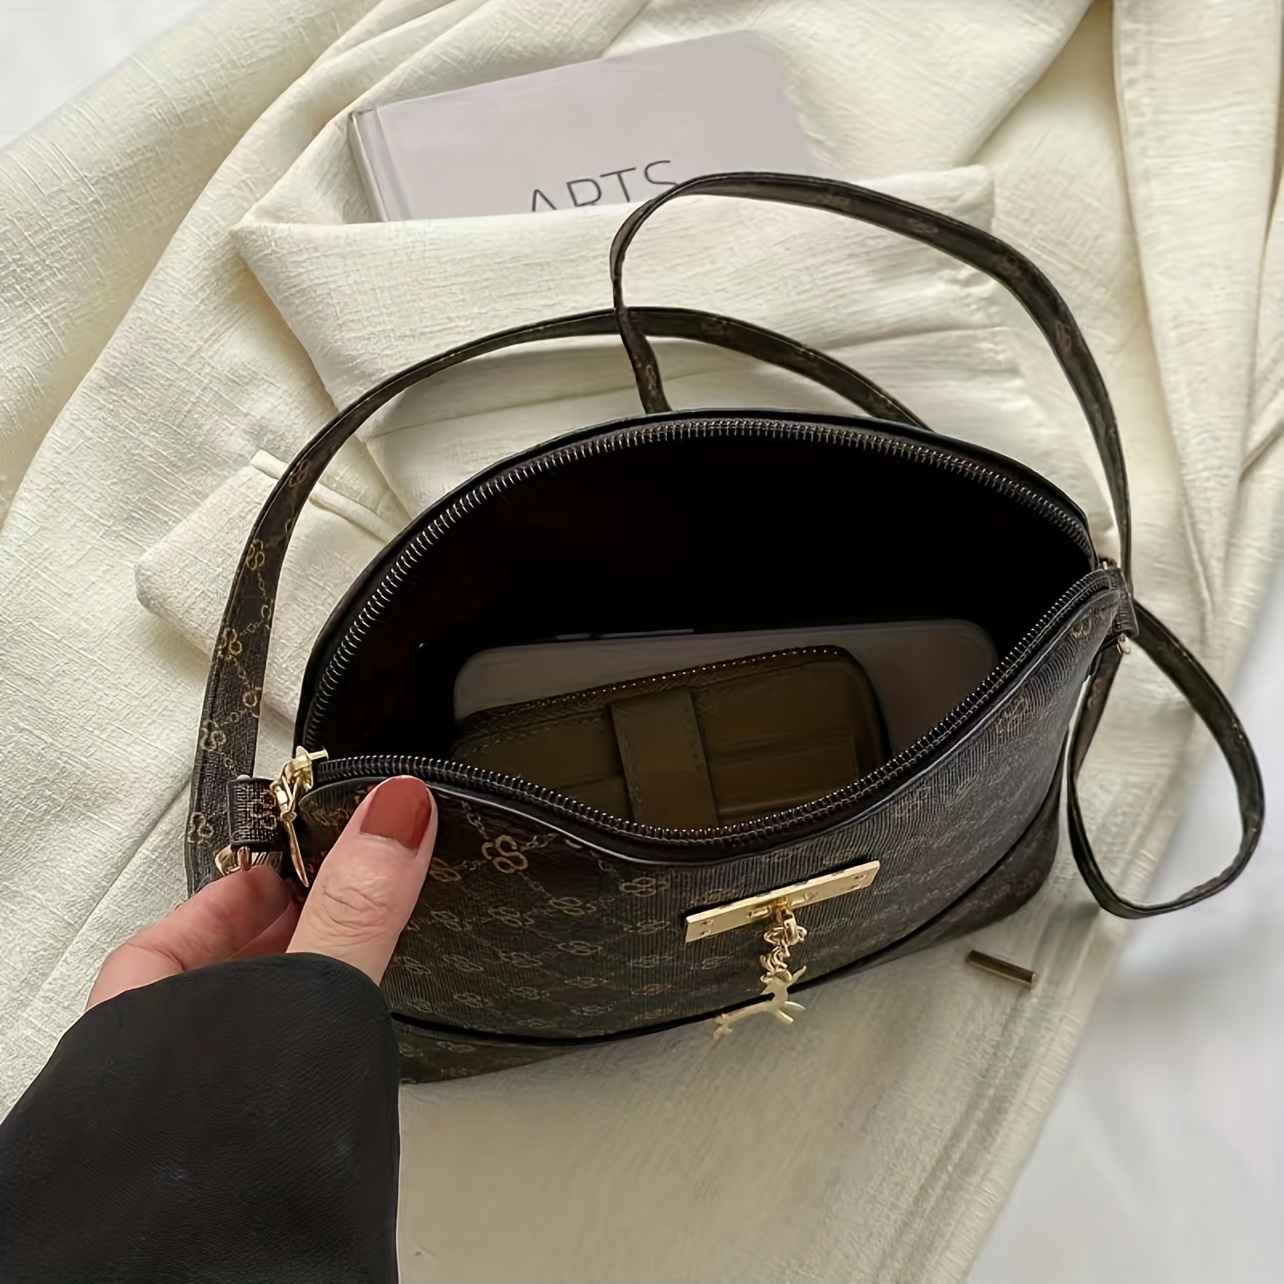 Retro Printed Shoulder Zipper Bag, Classic Elegant Crossbody Bag